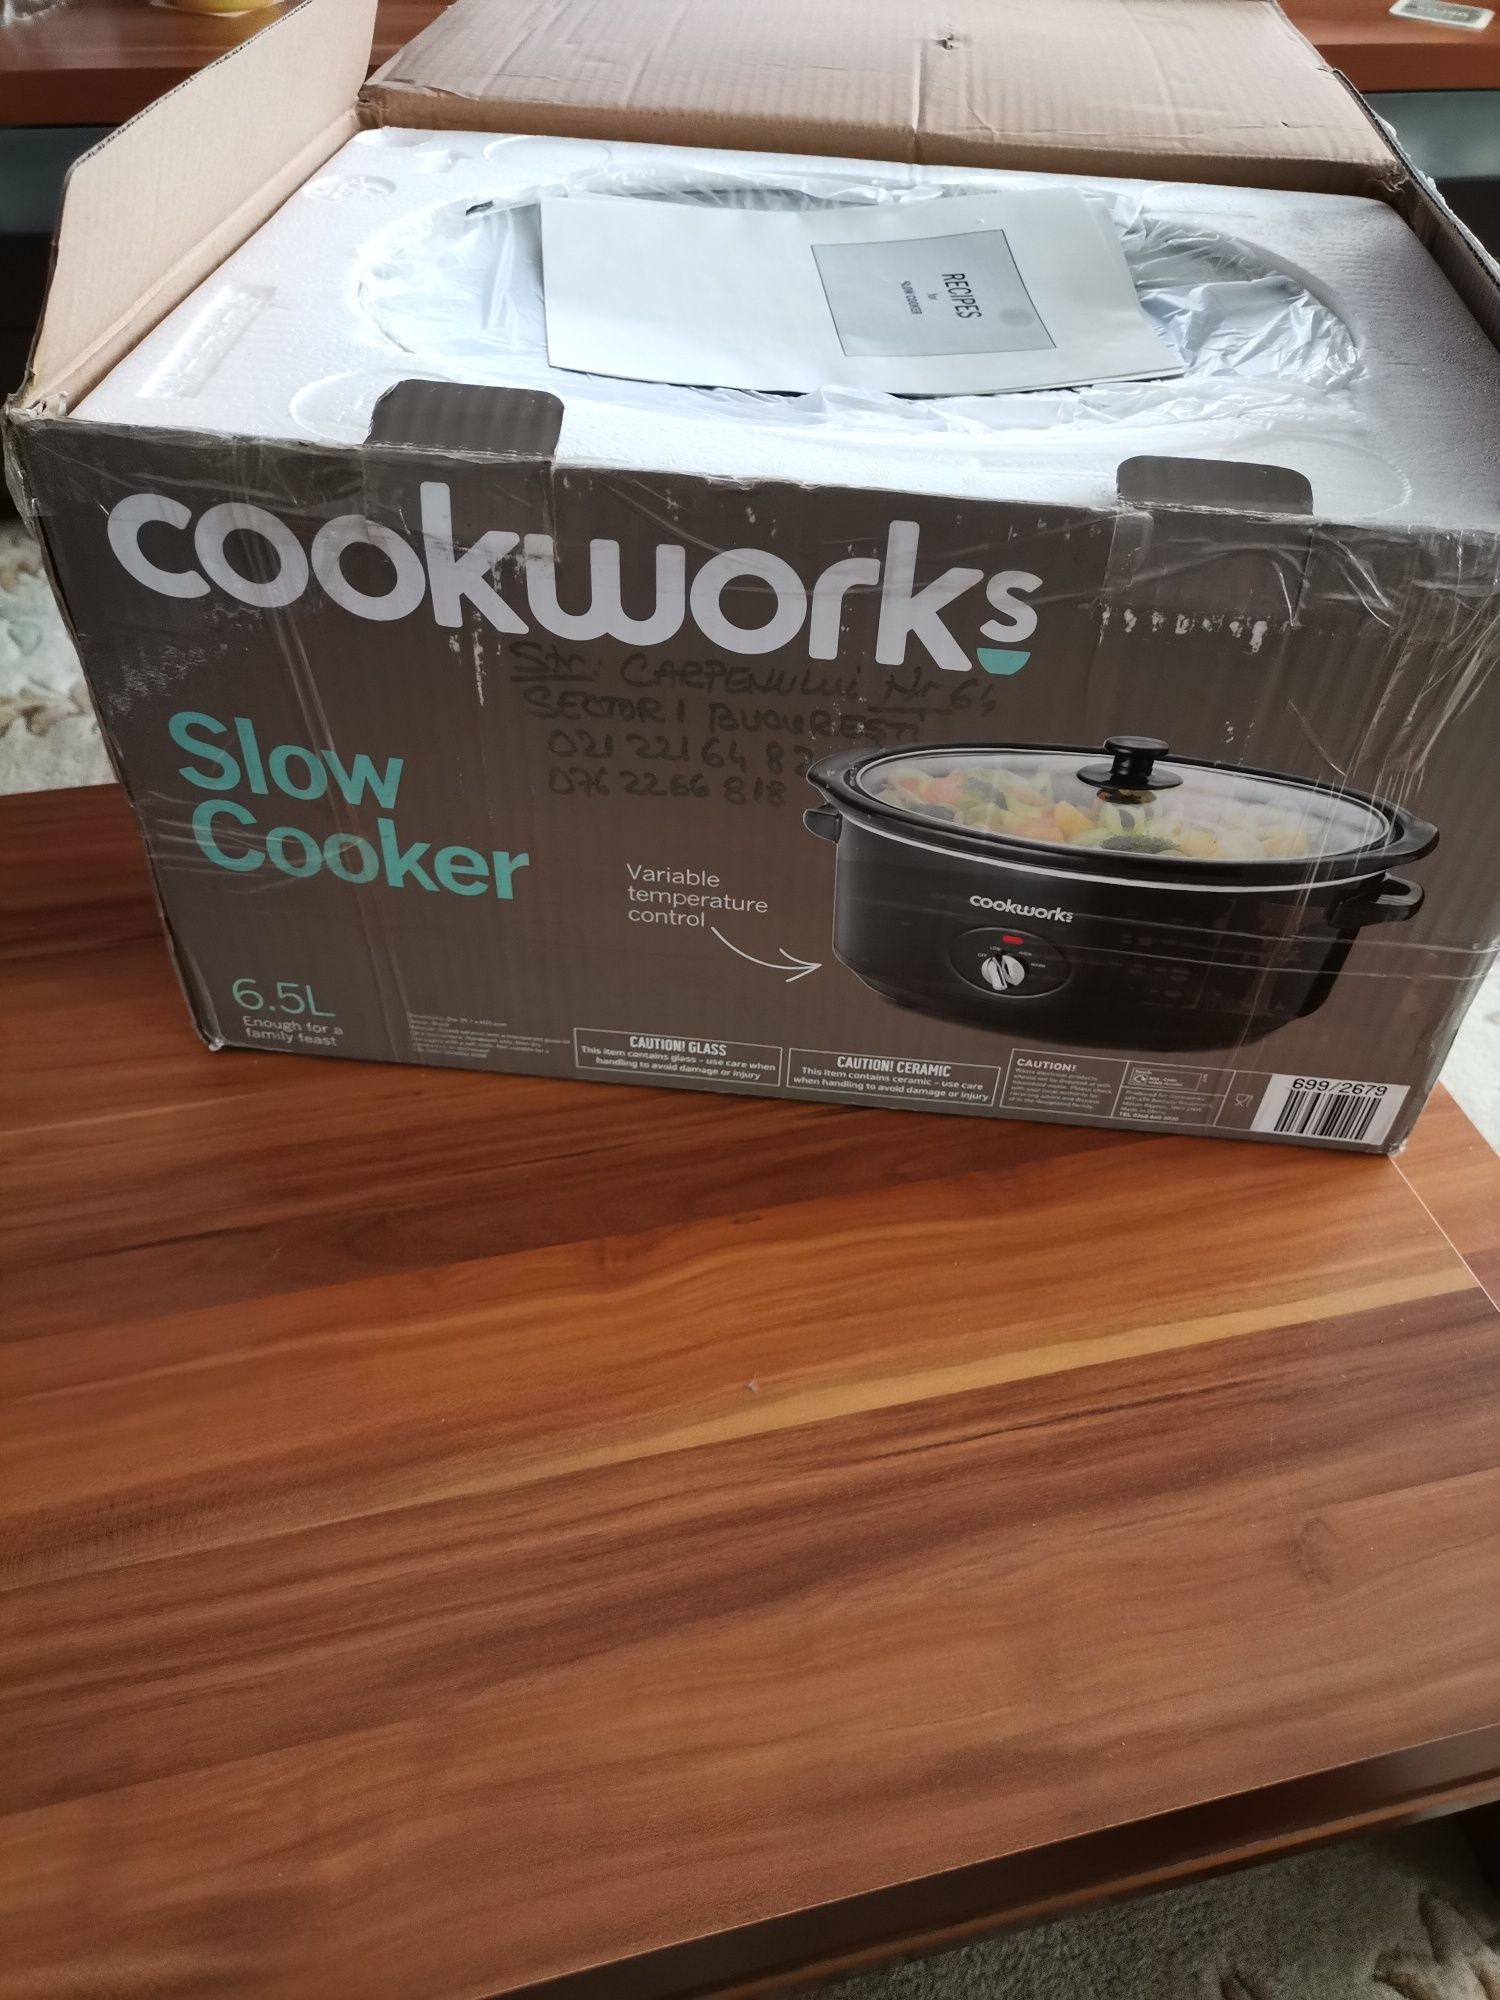 Vând Slow Cooker Cookworks capacitate 6,5l